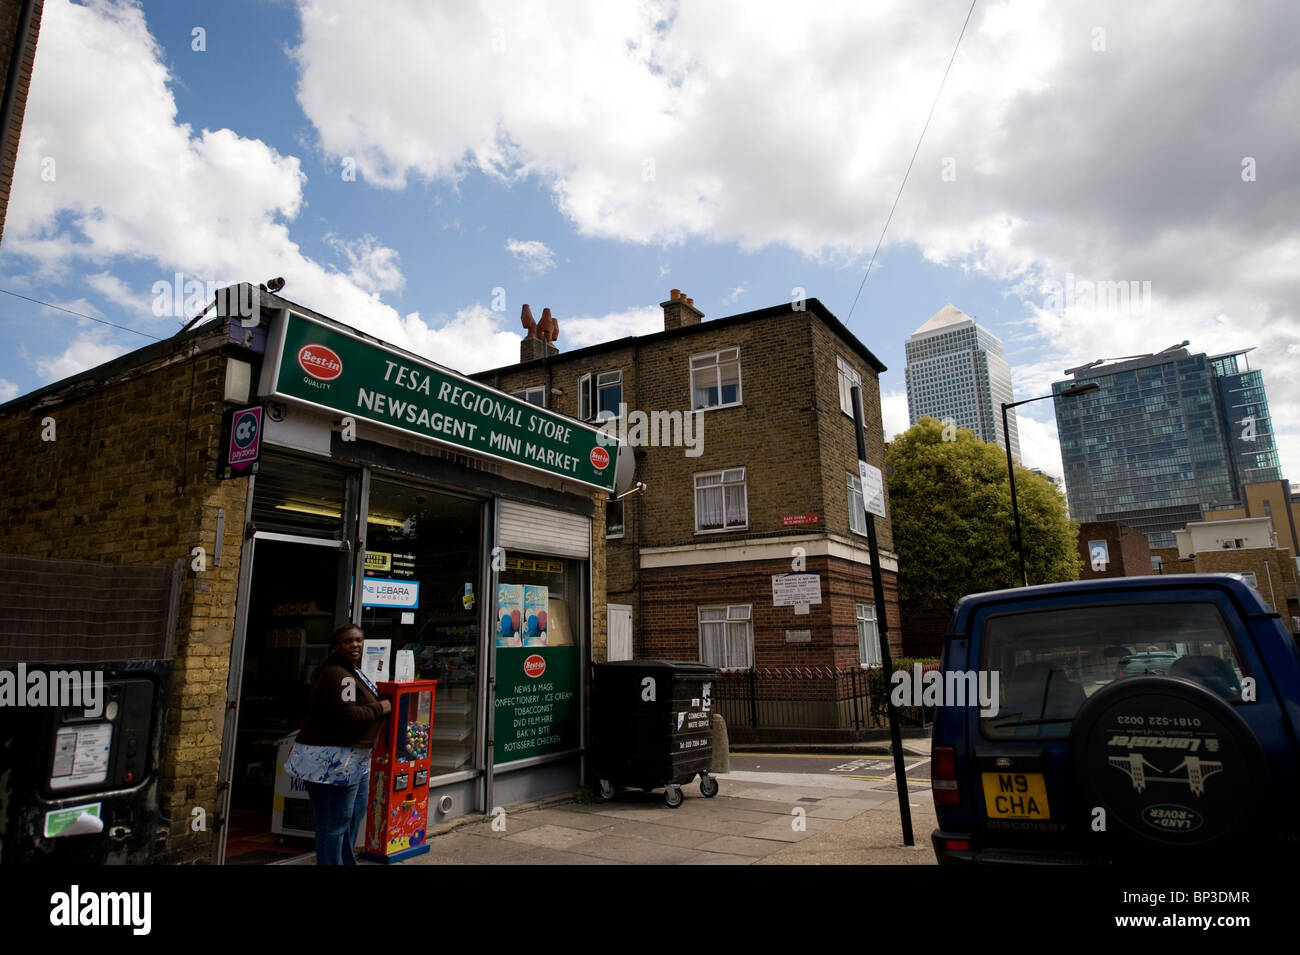 Pratique dans un quartier pauvre de l'Est de Londres les plus riches symboles de la ville en arrière-plan, tels que Canary Wharf Banque D'Images